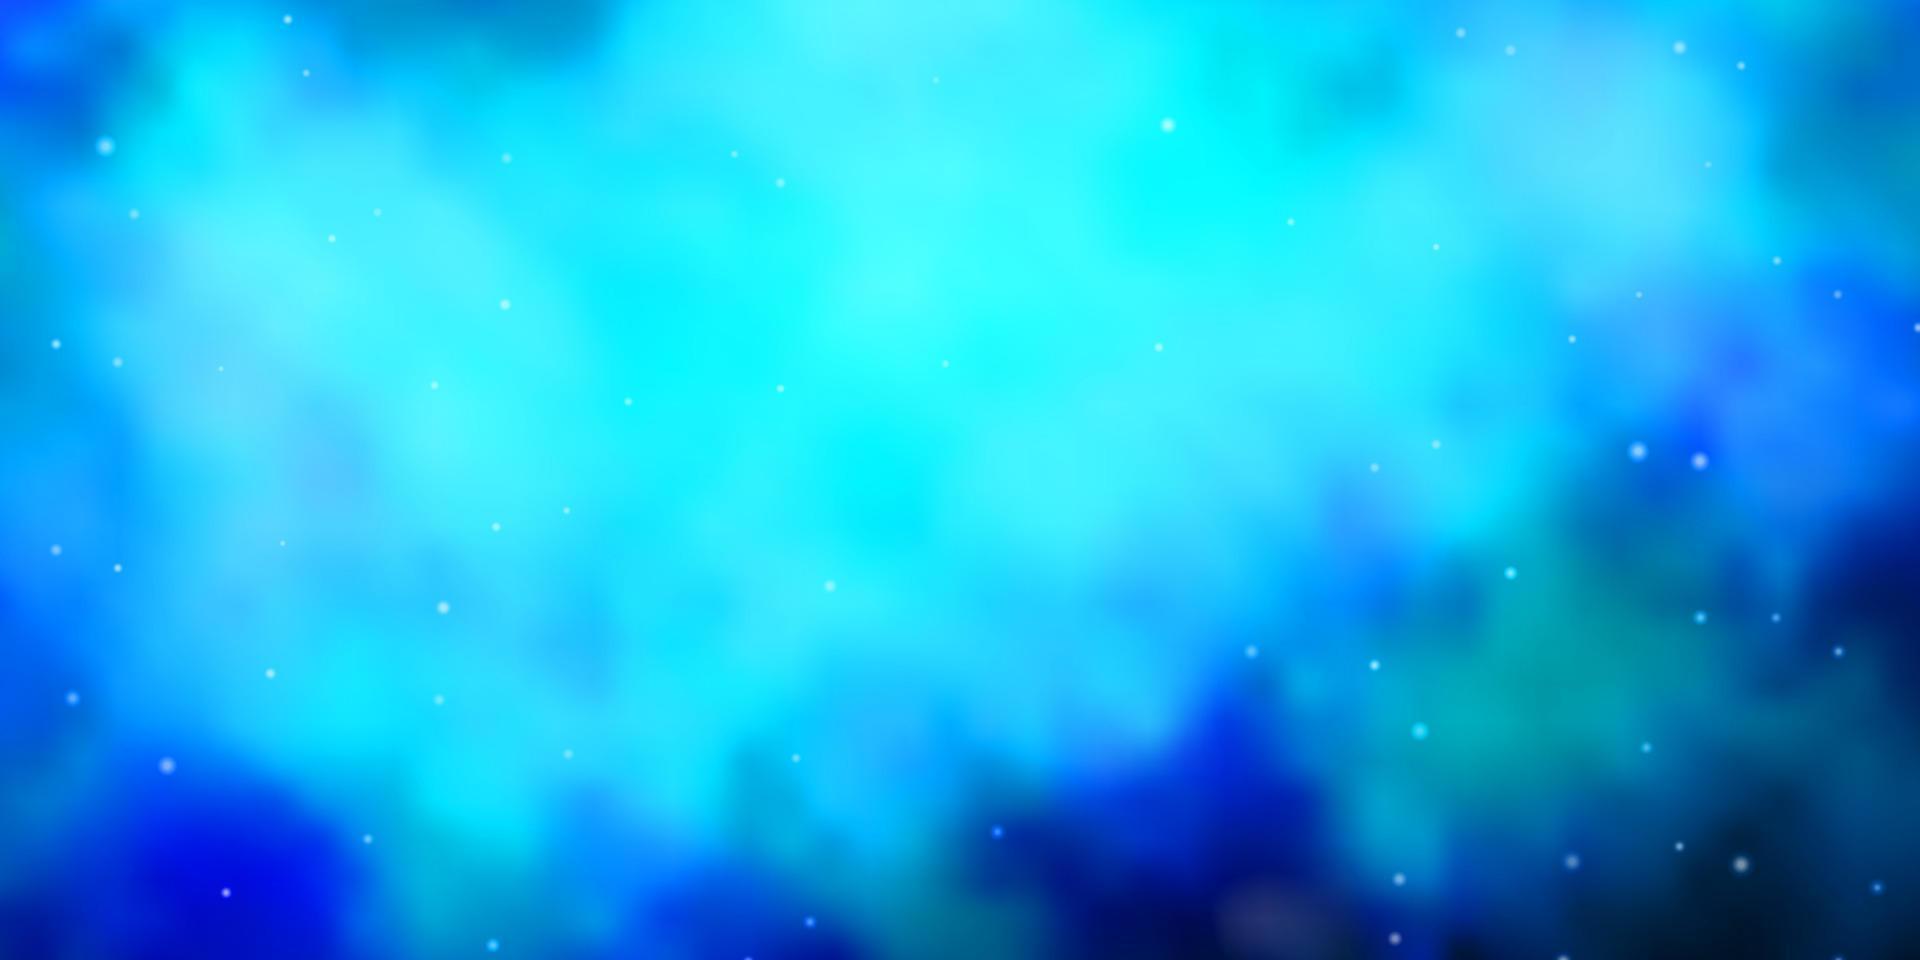 sfondo vettoriale blu scuro con stelle piccole e grandi.